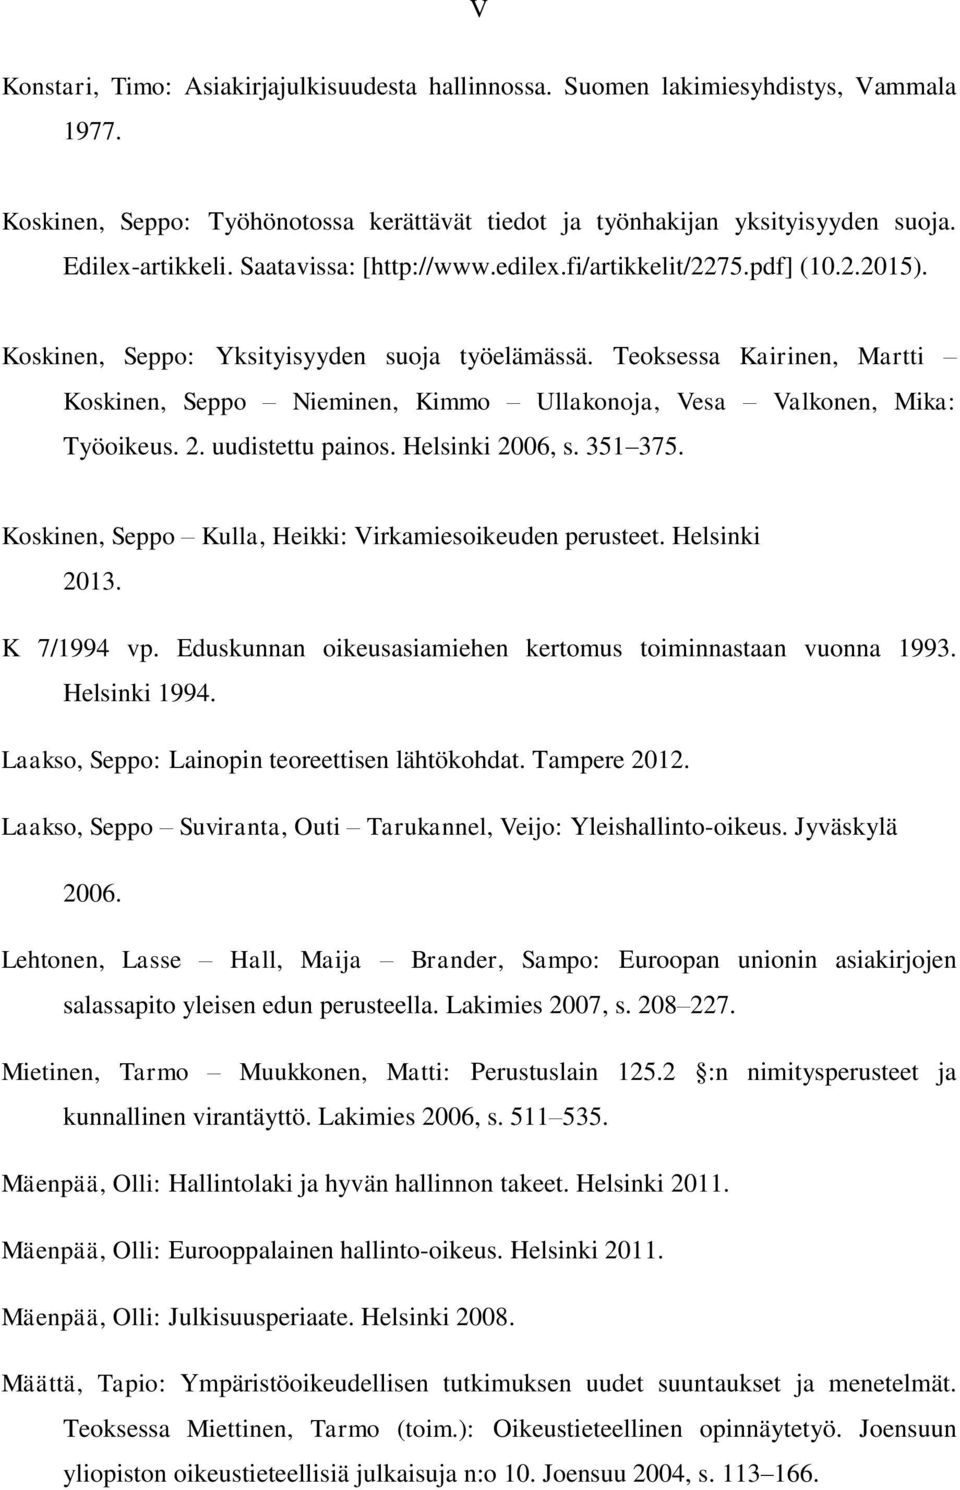 Teoksessa Kairinen, Martti Koskinen, Seppo Nieminen, Kimmo Ullakonoja, Vesa Valkonen, Mika: Työoikeus. 2. uudistettu painos. Helsinki 2006, s. 351 375.